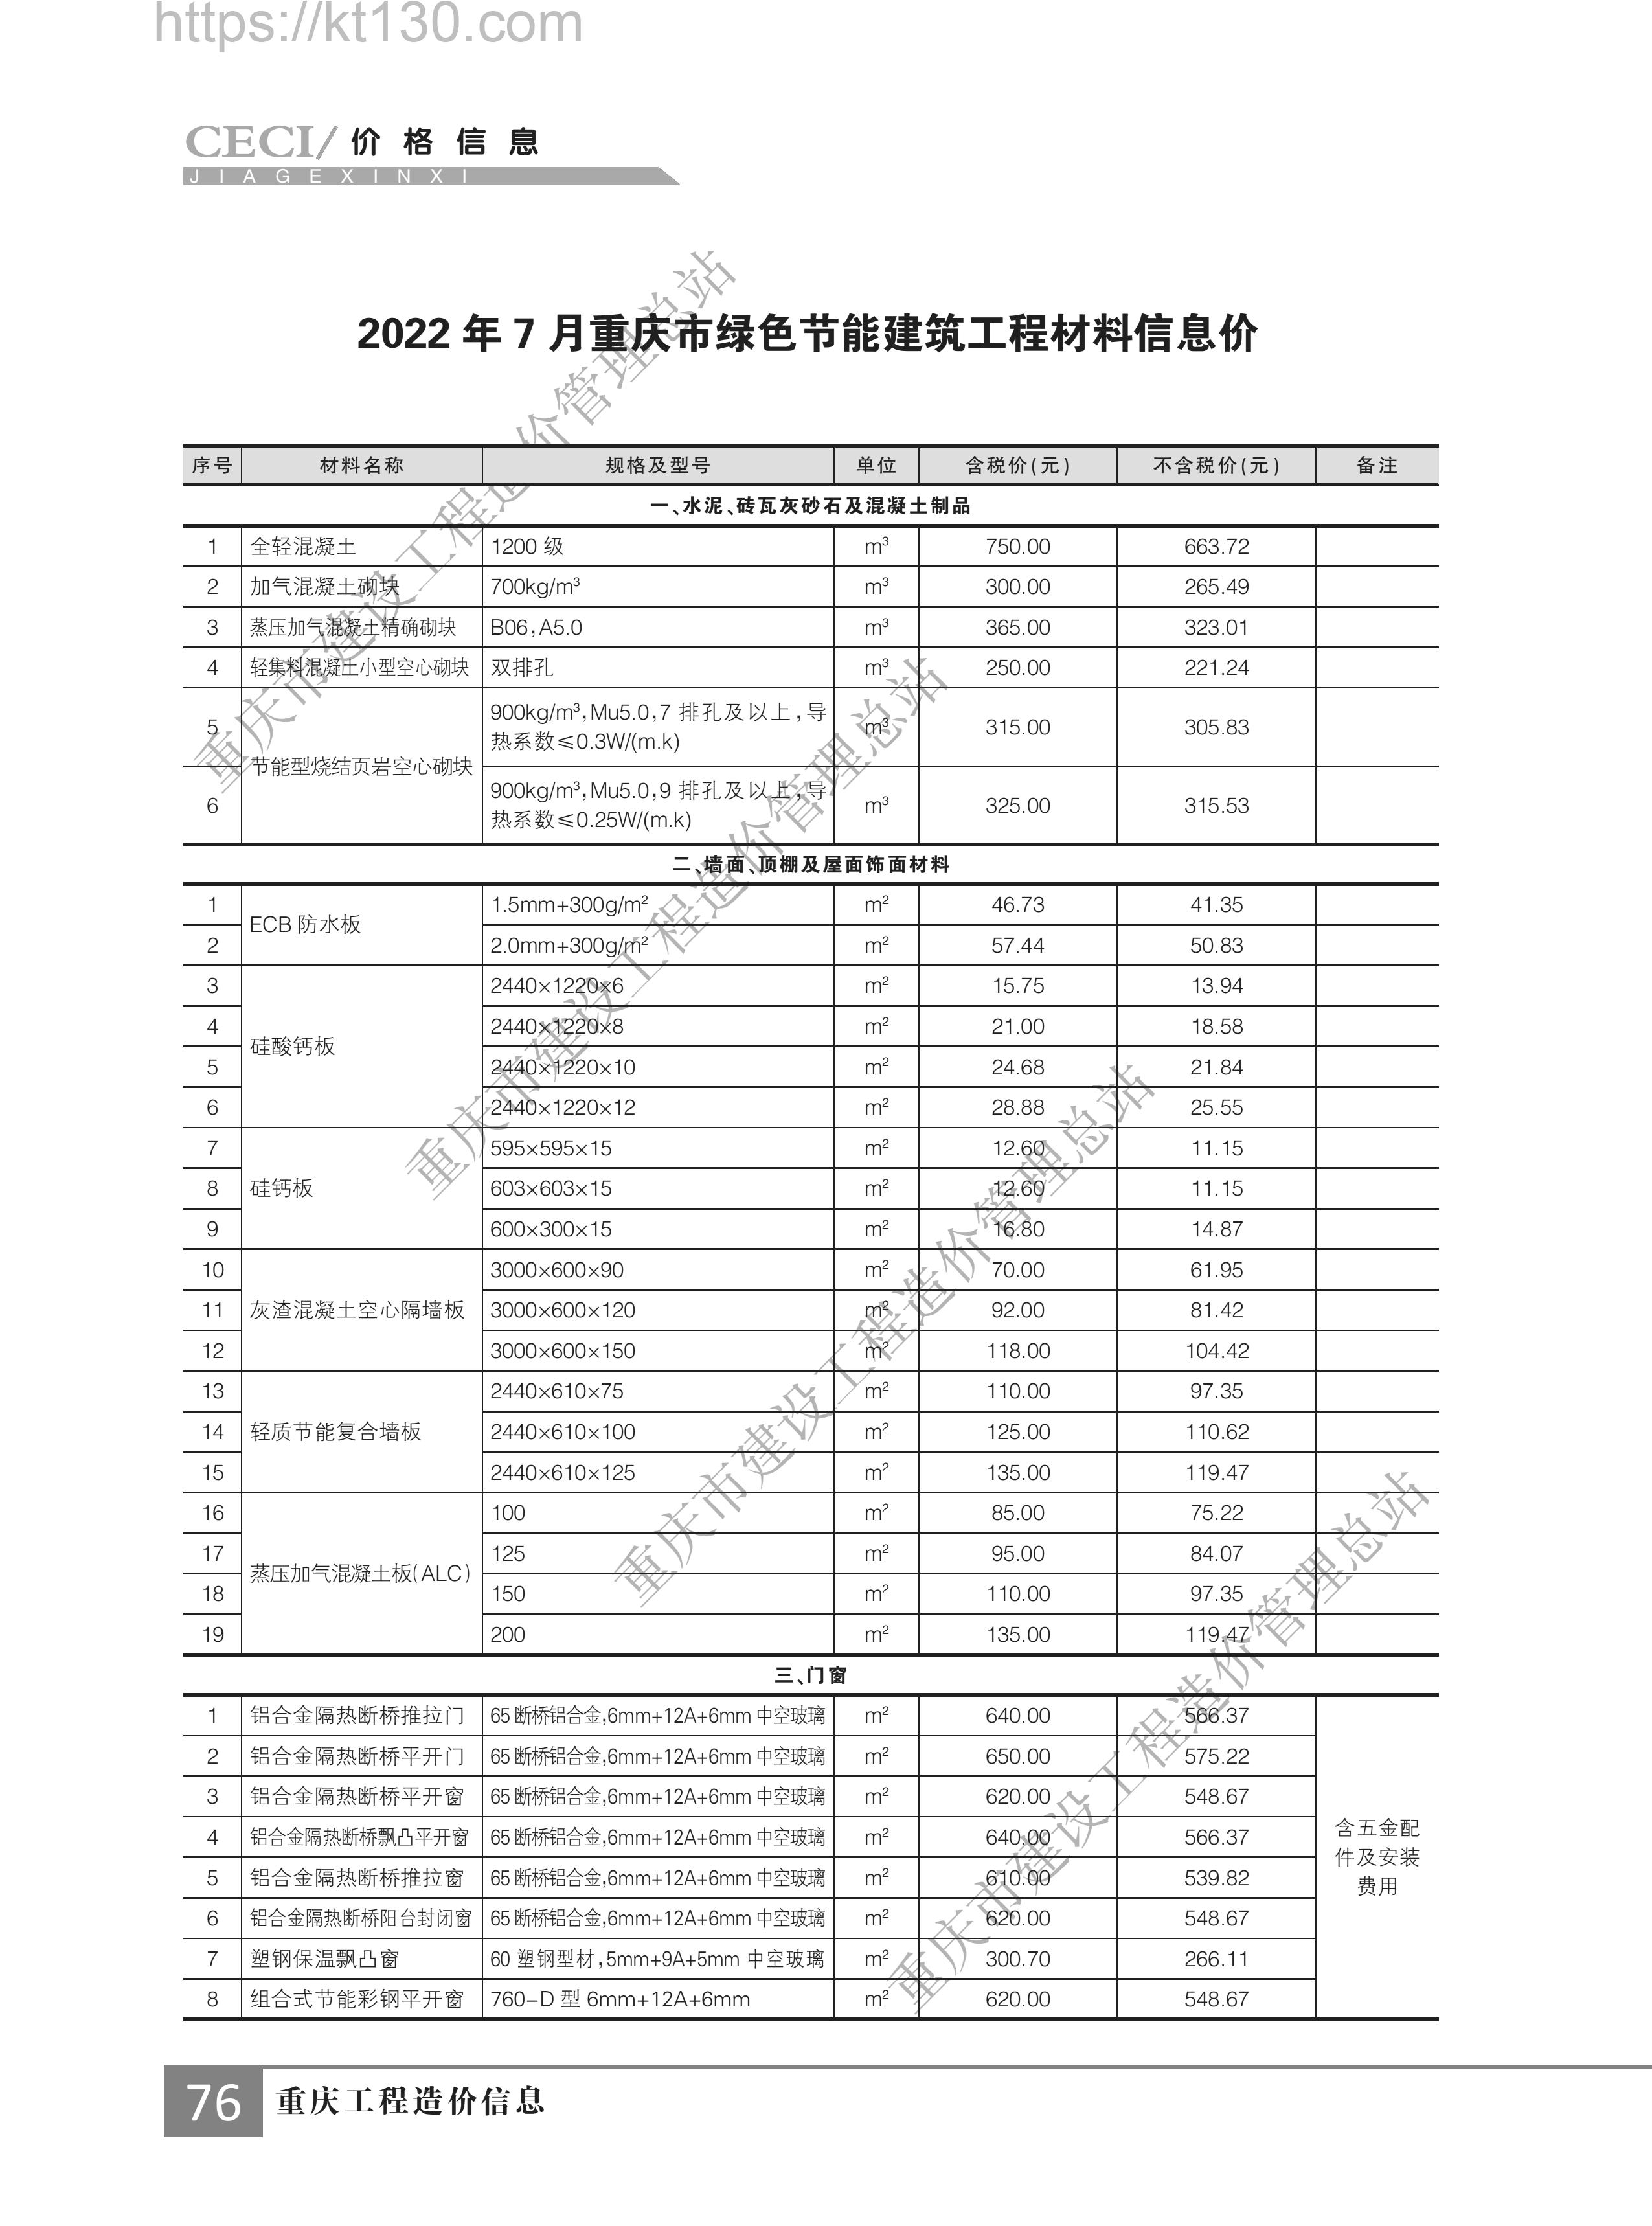 重庆市2022年第八期建筑材料价_绿色节能建筑材料